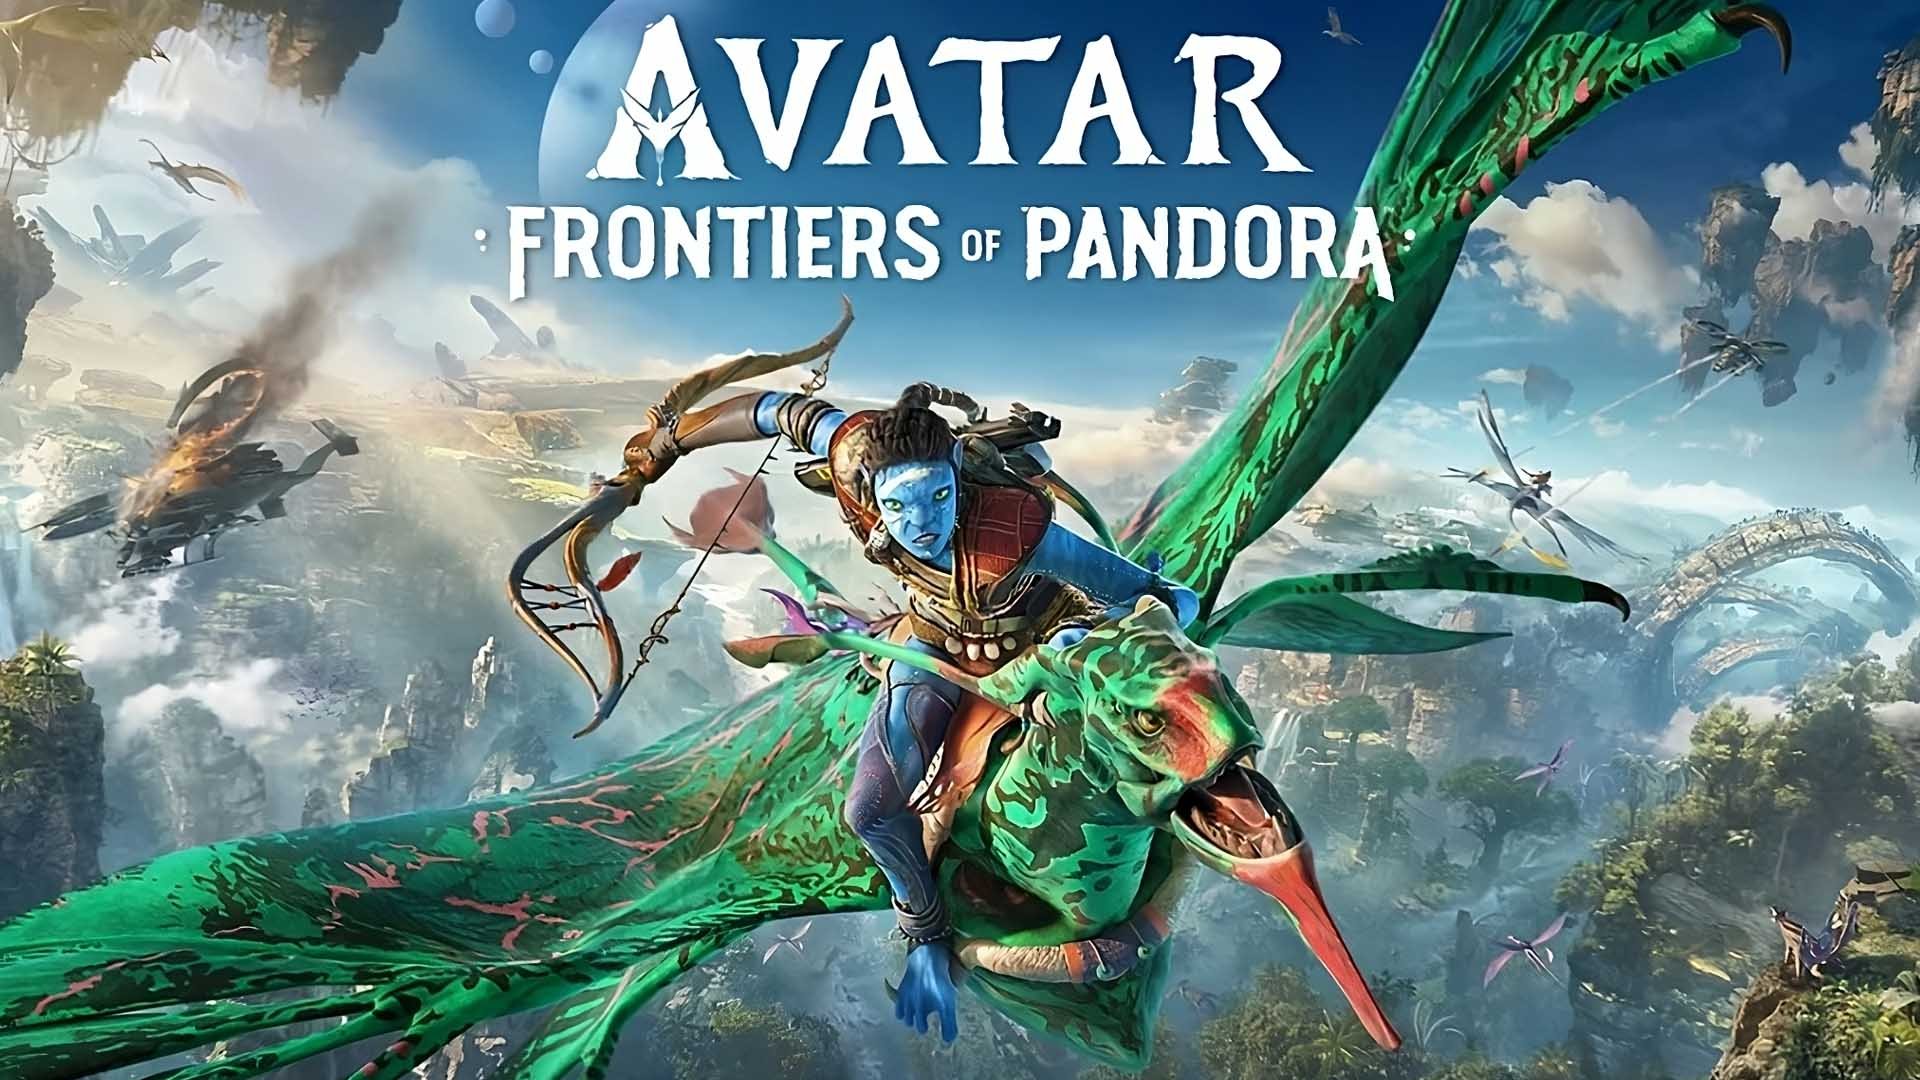 Avatar: Frontiers of Pandora - Release